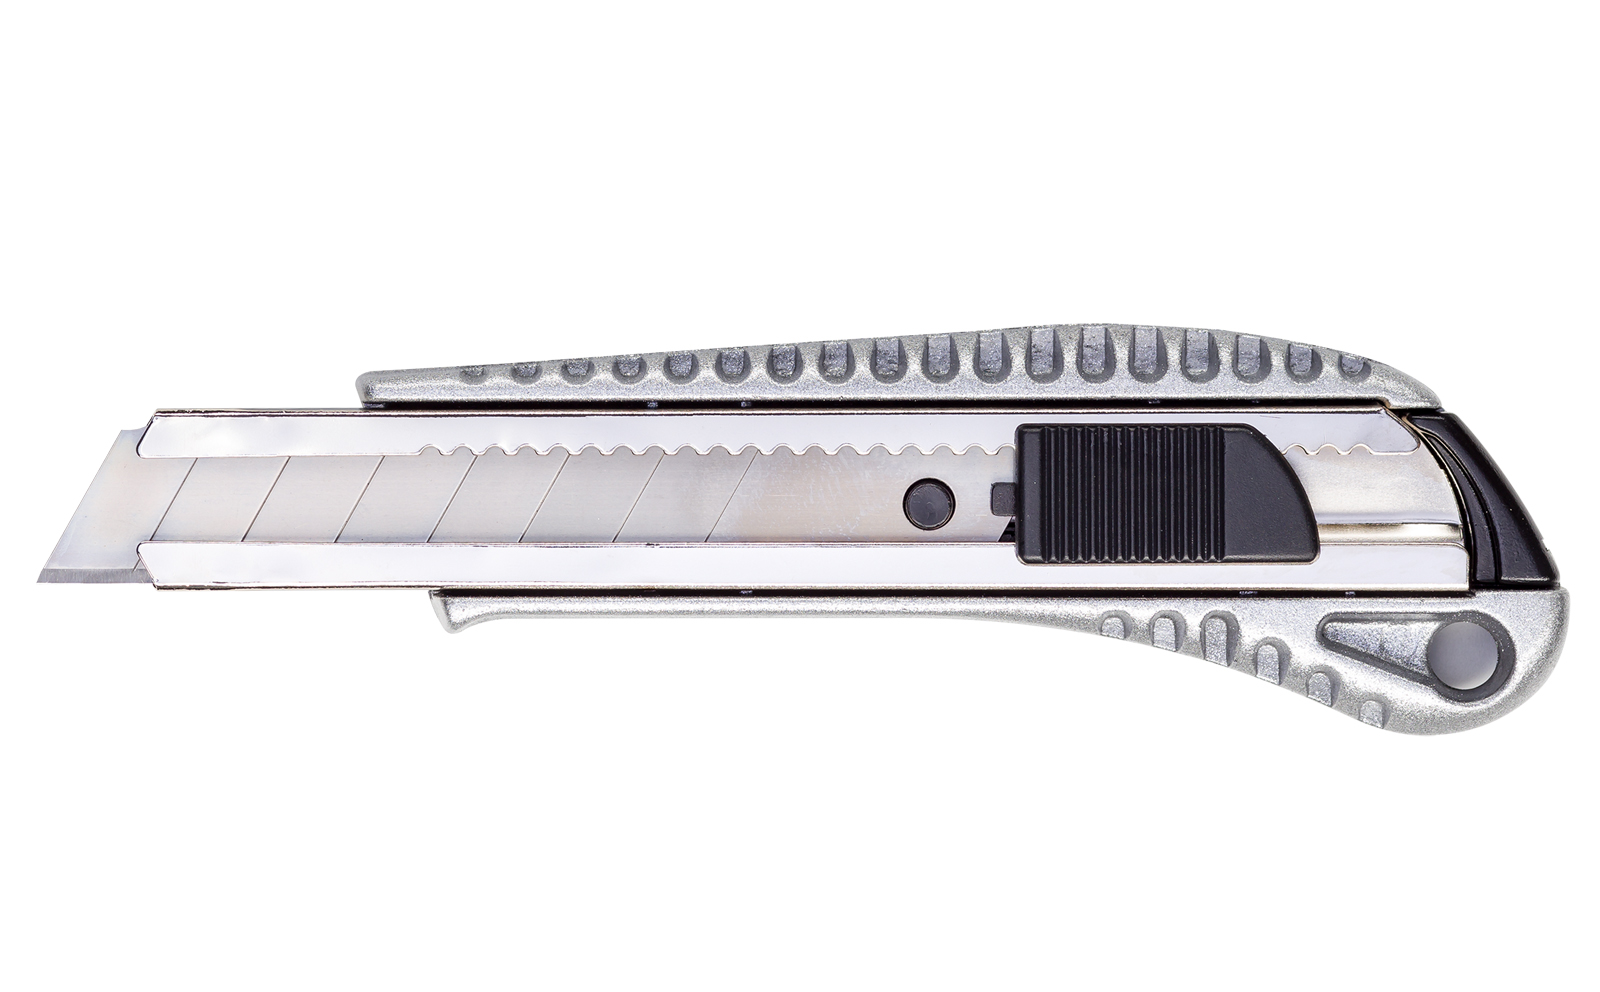 2x Orig. Würth 2K-Cutter-Messer mit Schieber Teppichmesser 18 mm